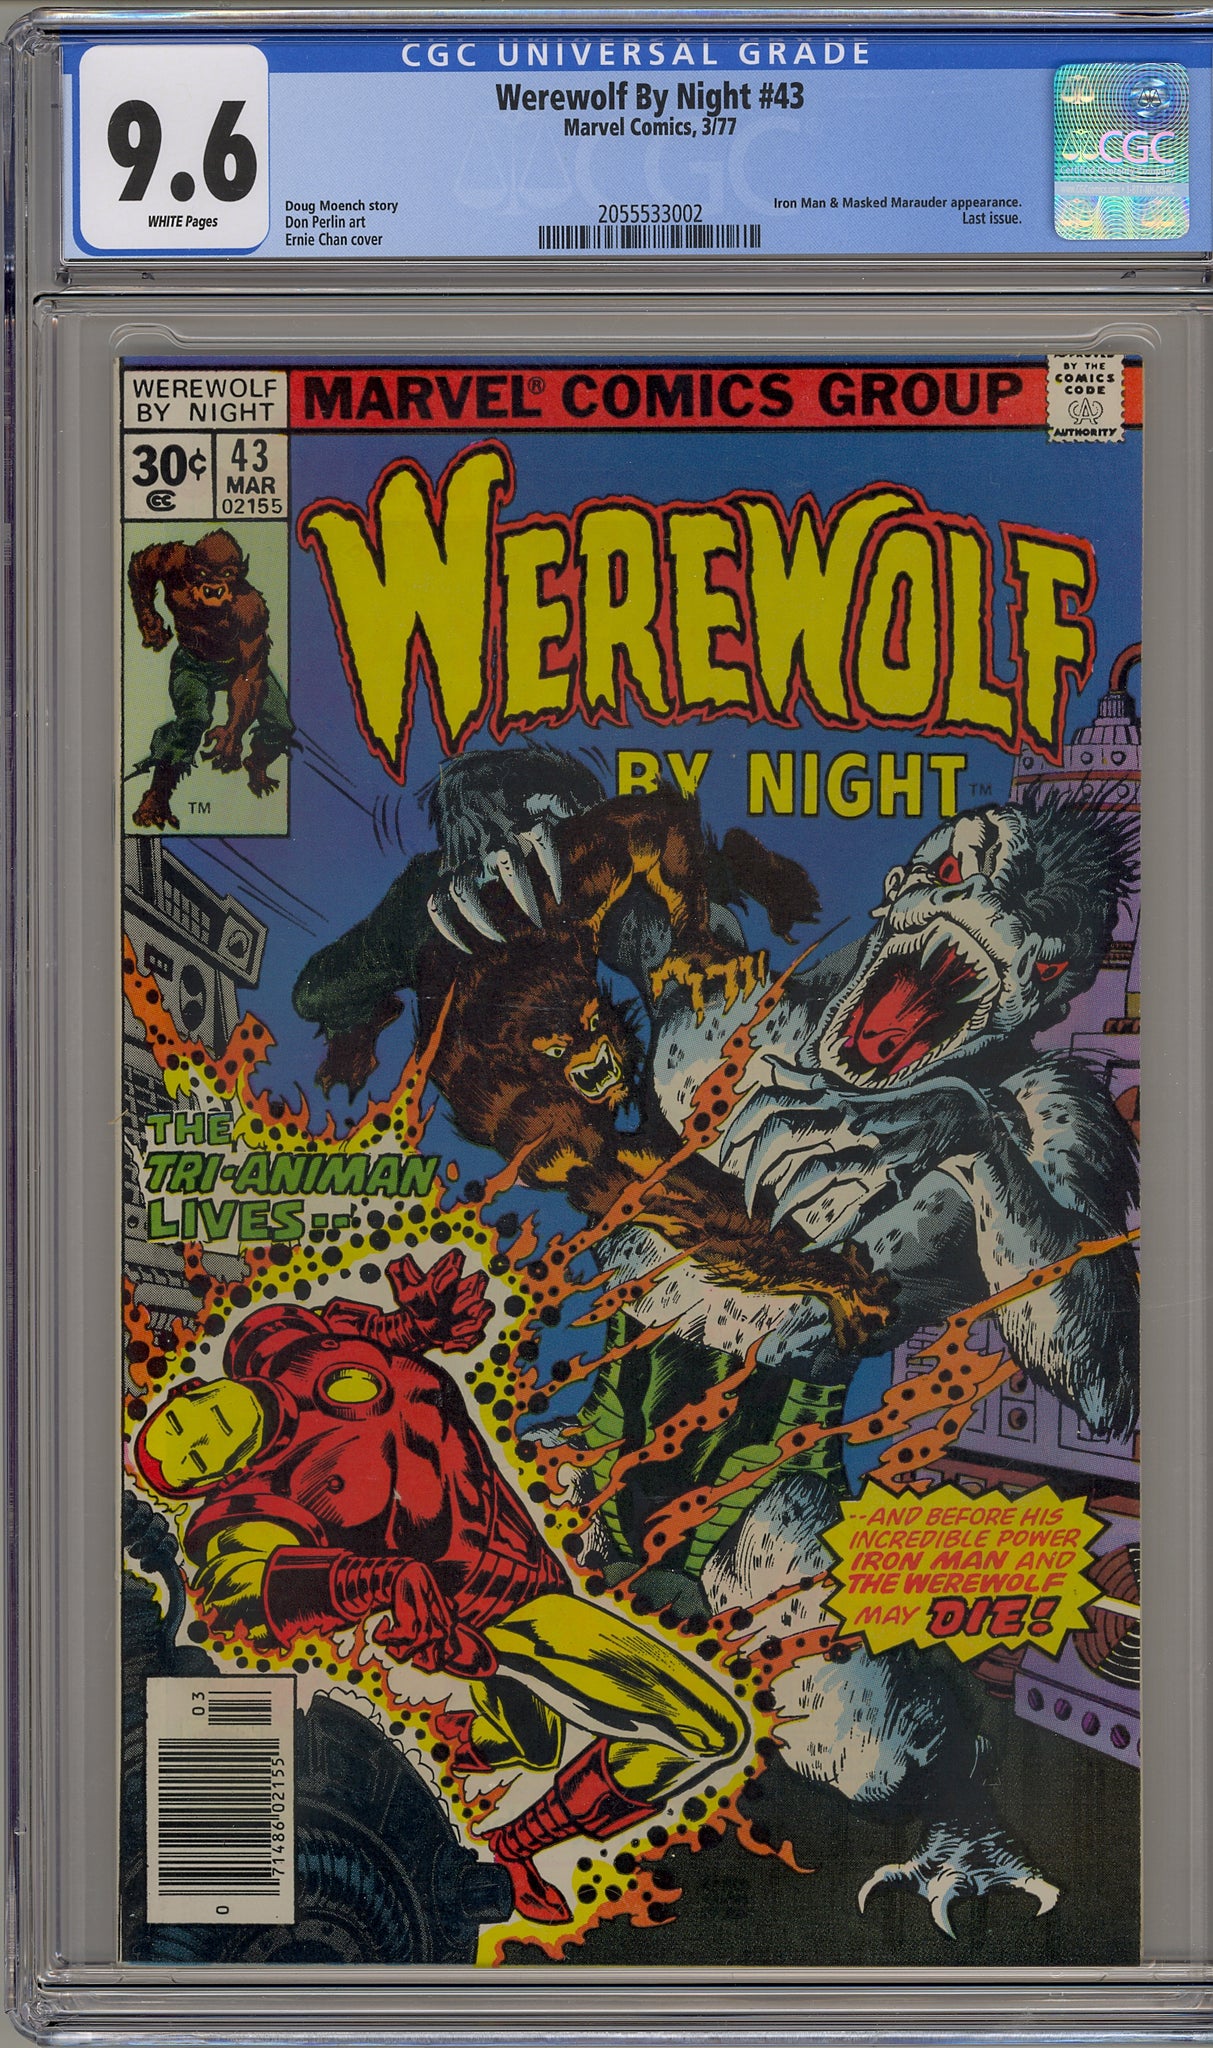 Werewolf by Night #43 (1977) Iron Man